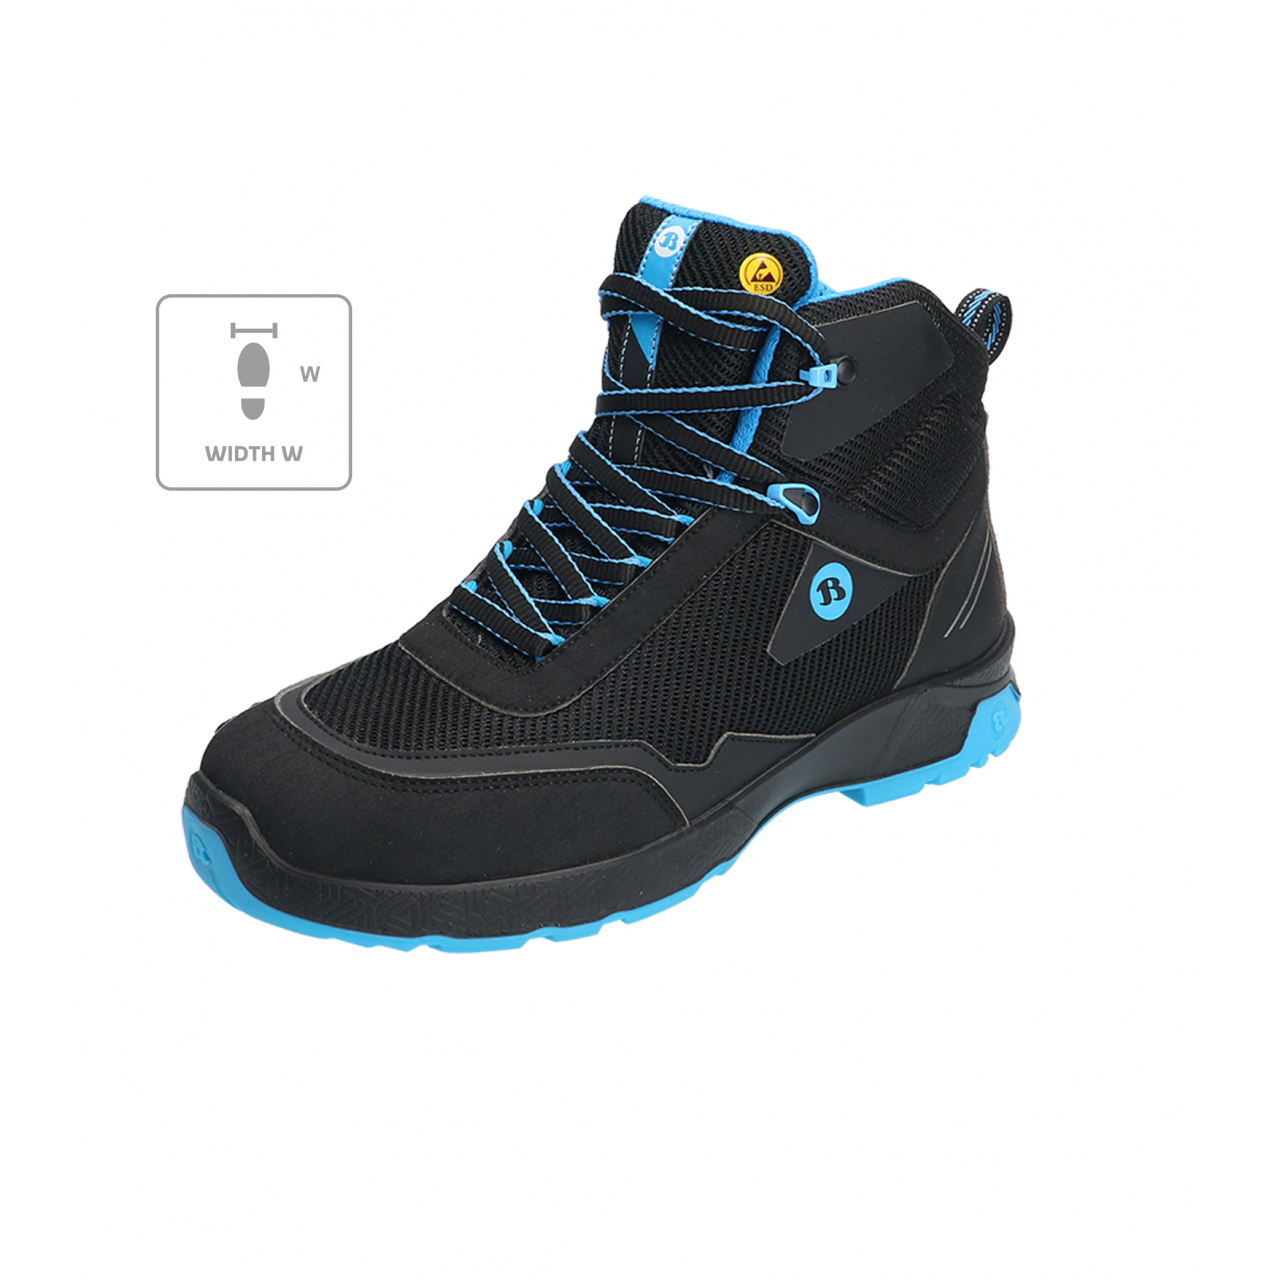 Kotníkové boty Bata Industrials Summ One W - černé-modré, 43